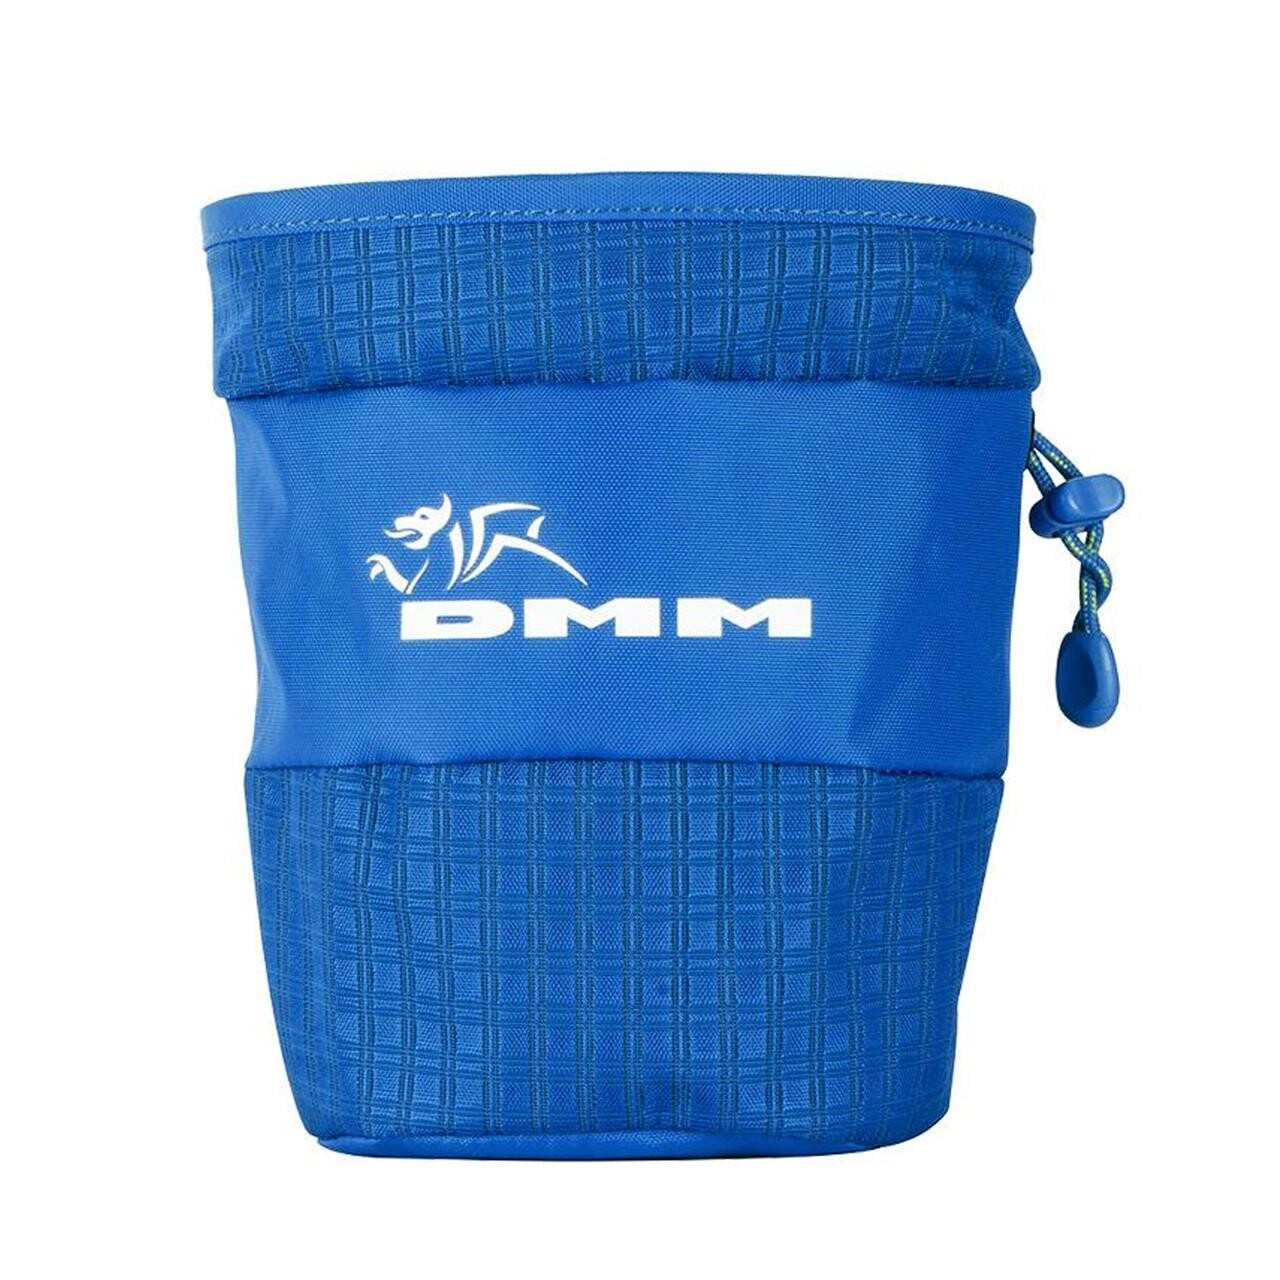 Se DMM Tube Chalk Bag (Blå (BLUE)) hos Friluftsland.dk